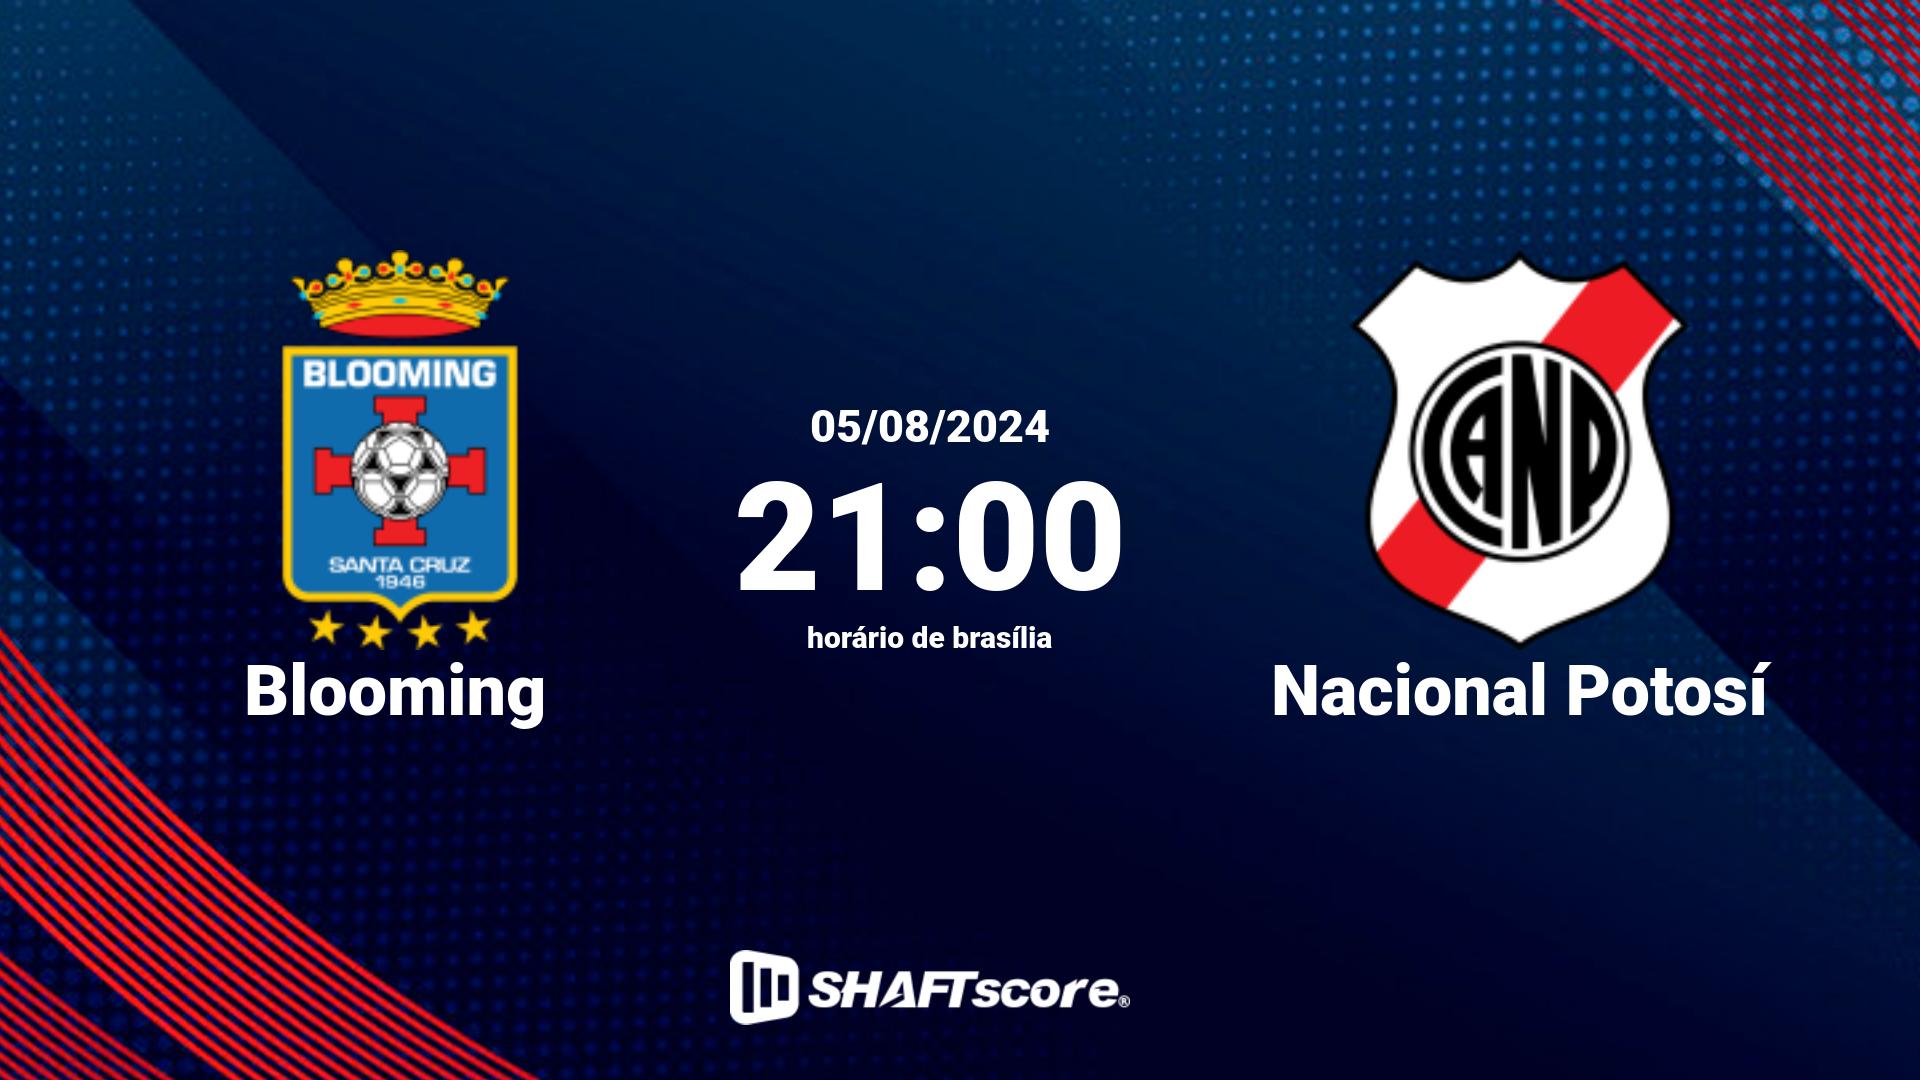 Estatísticas do jogo Blooming vs Nacional Potosí 05.08 21:00